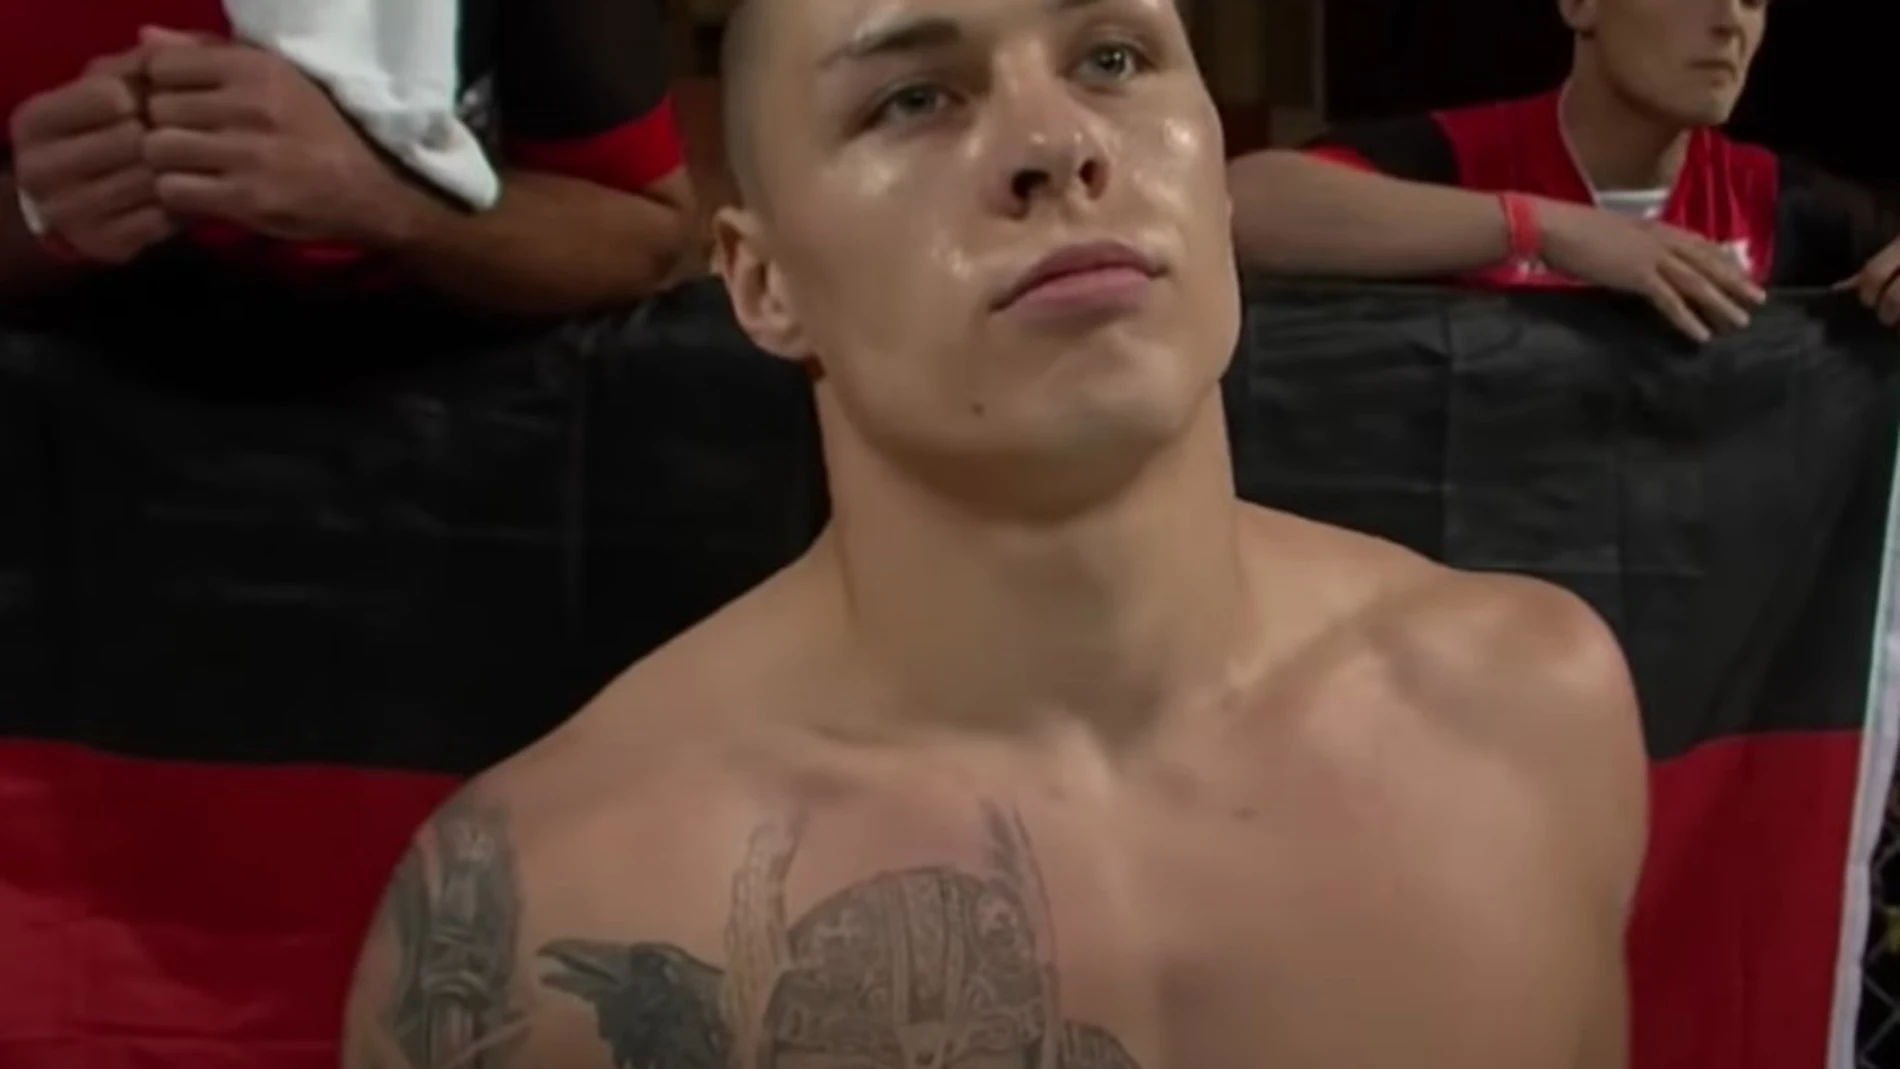 Timo Feucht, el luchador alemán expulsado de la UFC